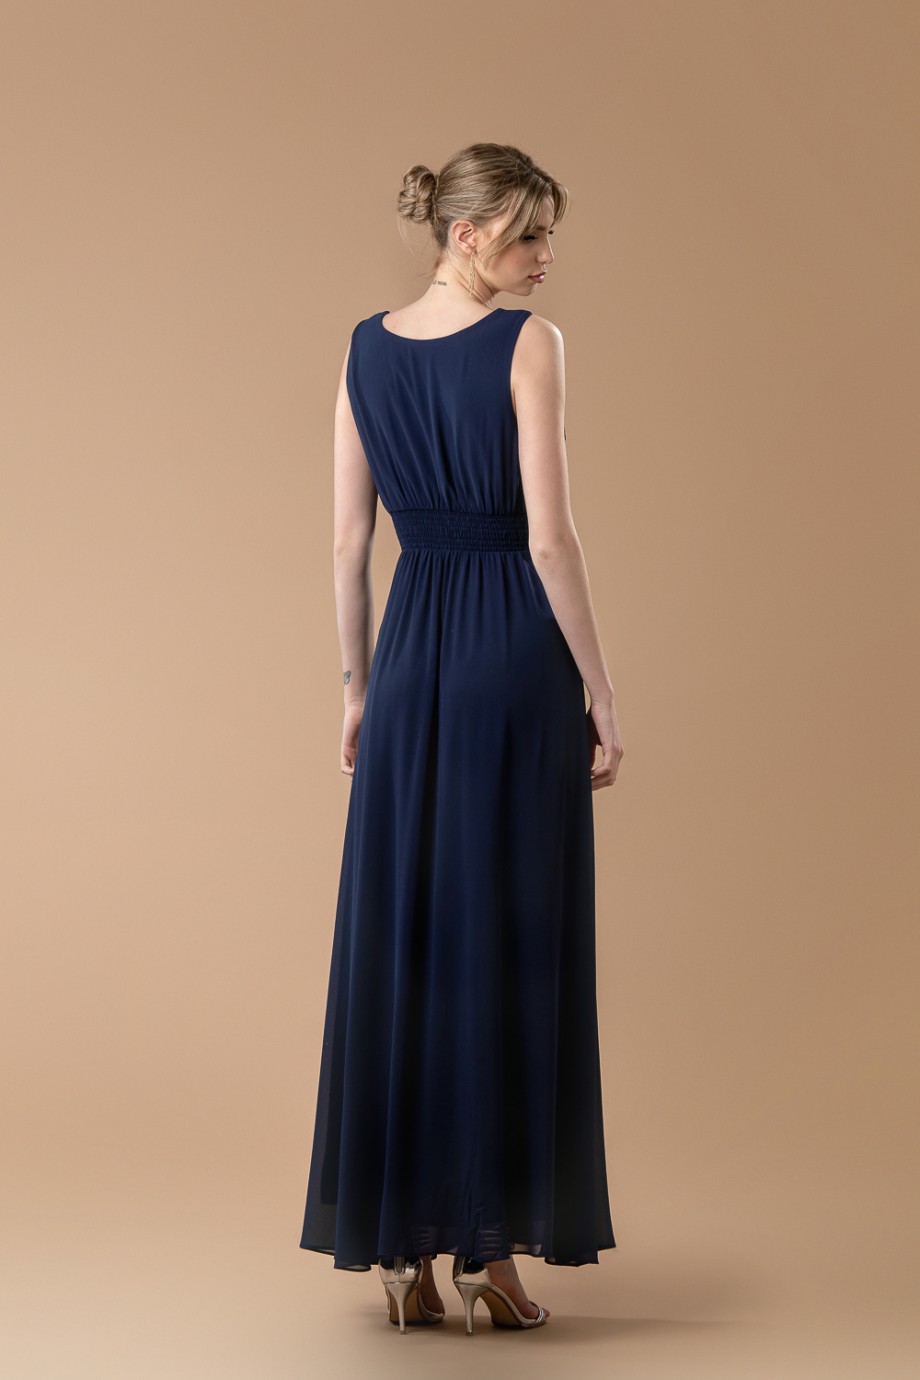 Μακρύ μπλε σκούρο φόρεμα με ιδιαίτερο κέντημα στο μπούστο